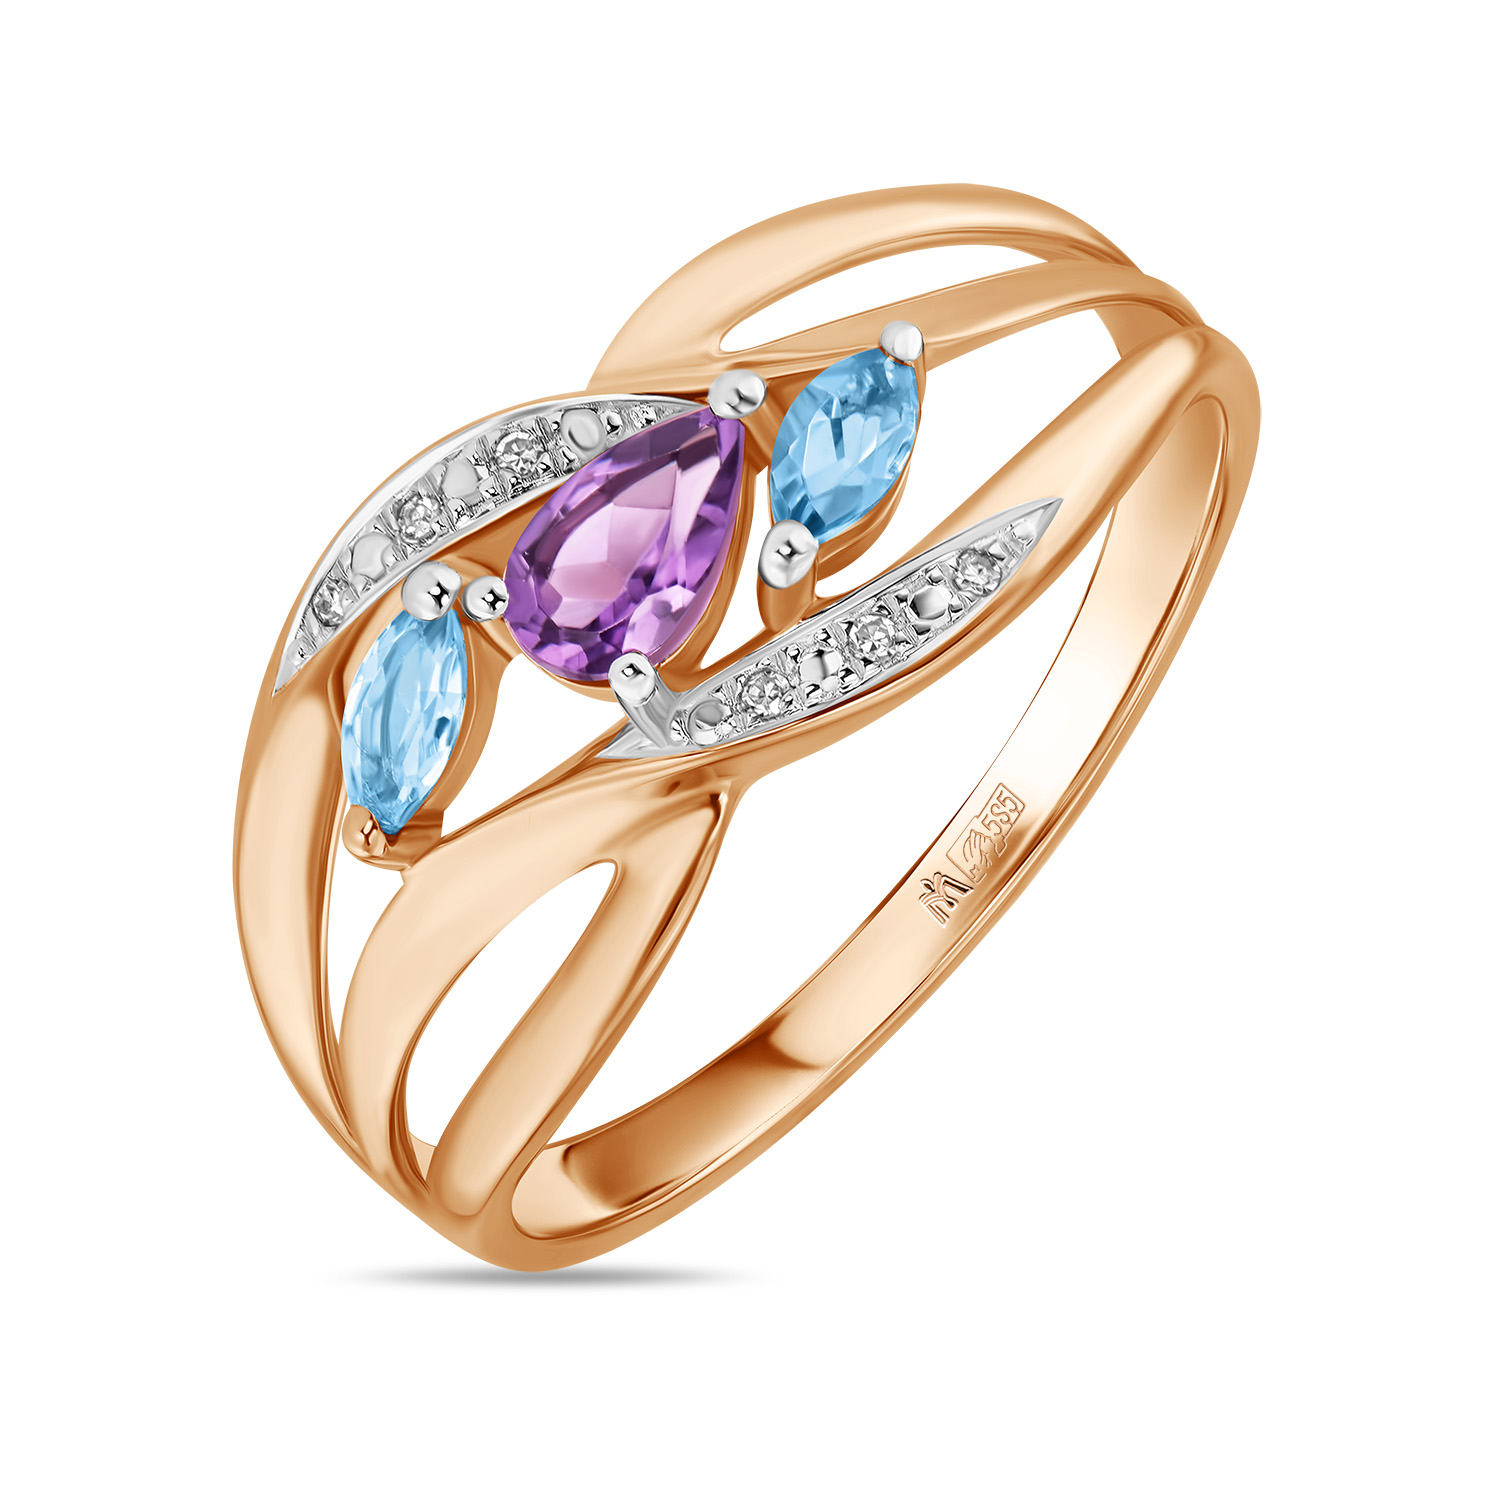 Кольца МЮЗ Золотое кольцо с аметистом, топазом и бриллиантами кольца мюз золотое кольцо с аметистом топазом цитрином бриллиантами и перидотом